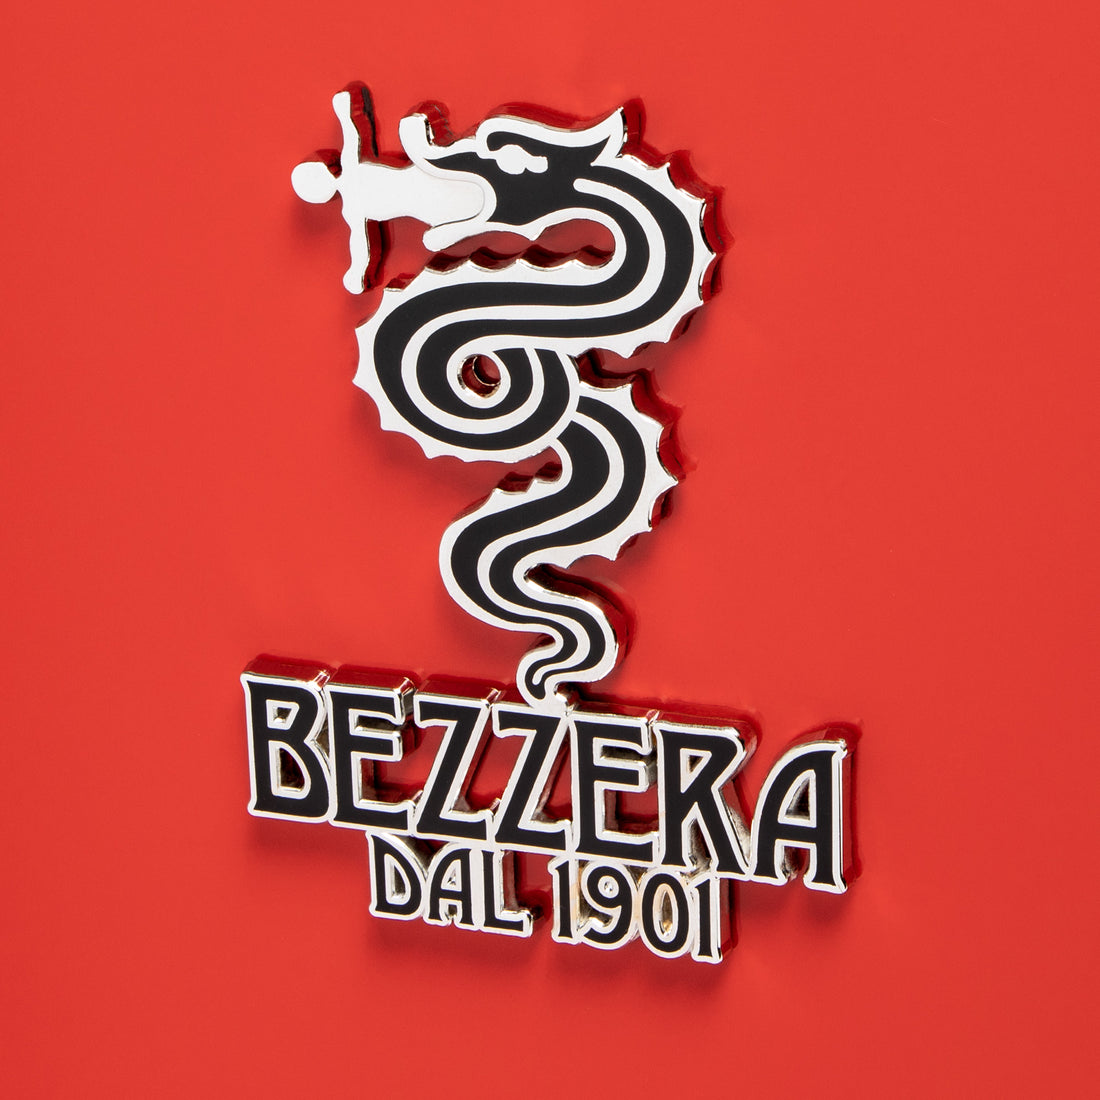 Bezzera Aria PID Espresso Machine with Flow Control - Red